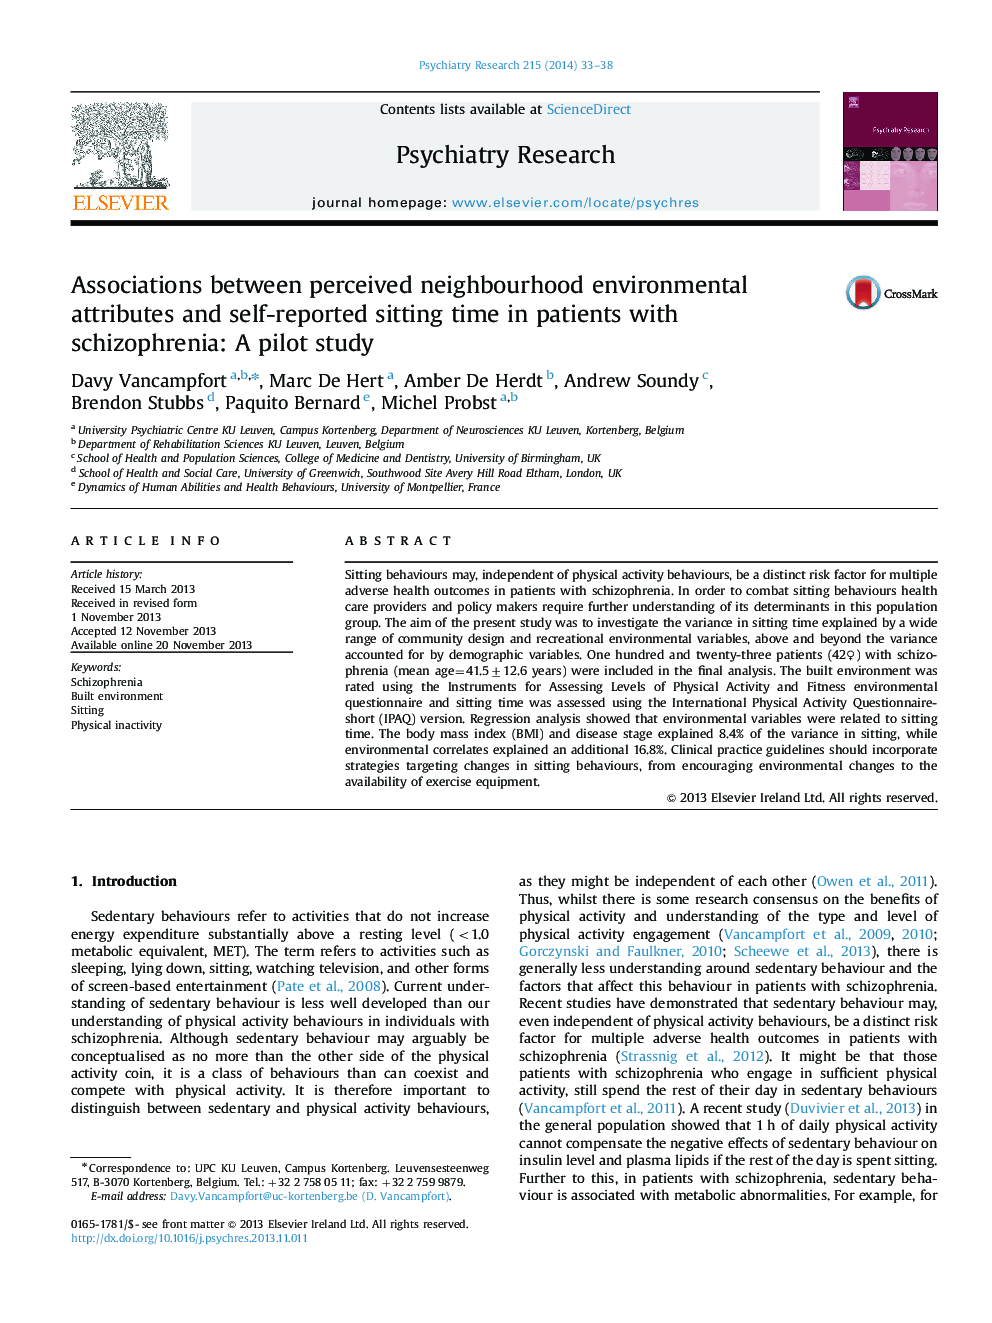 ارتباطات بین ویژگی های محیطی محور درک شده و زمان نشست خود در گزارش شده در بیماران مبتلا به اسکیزوفرنی: یک مطالعه آزمایشی 